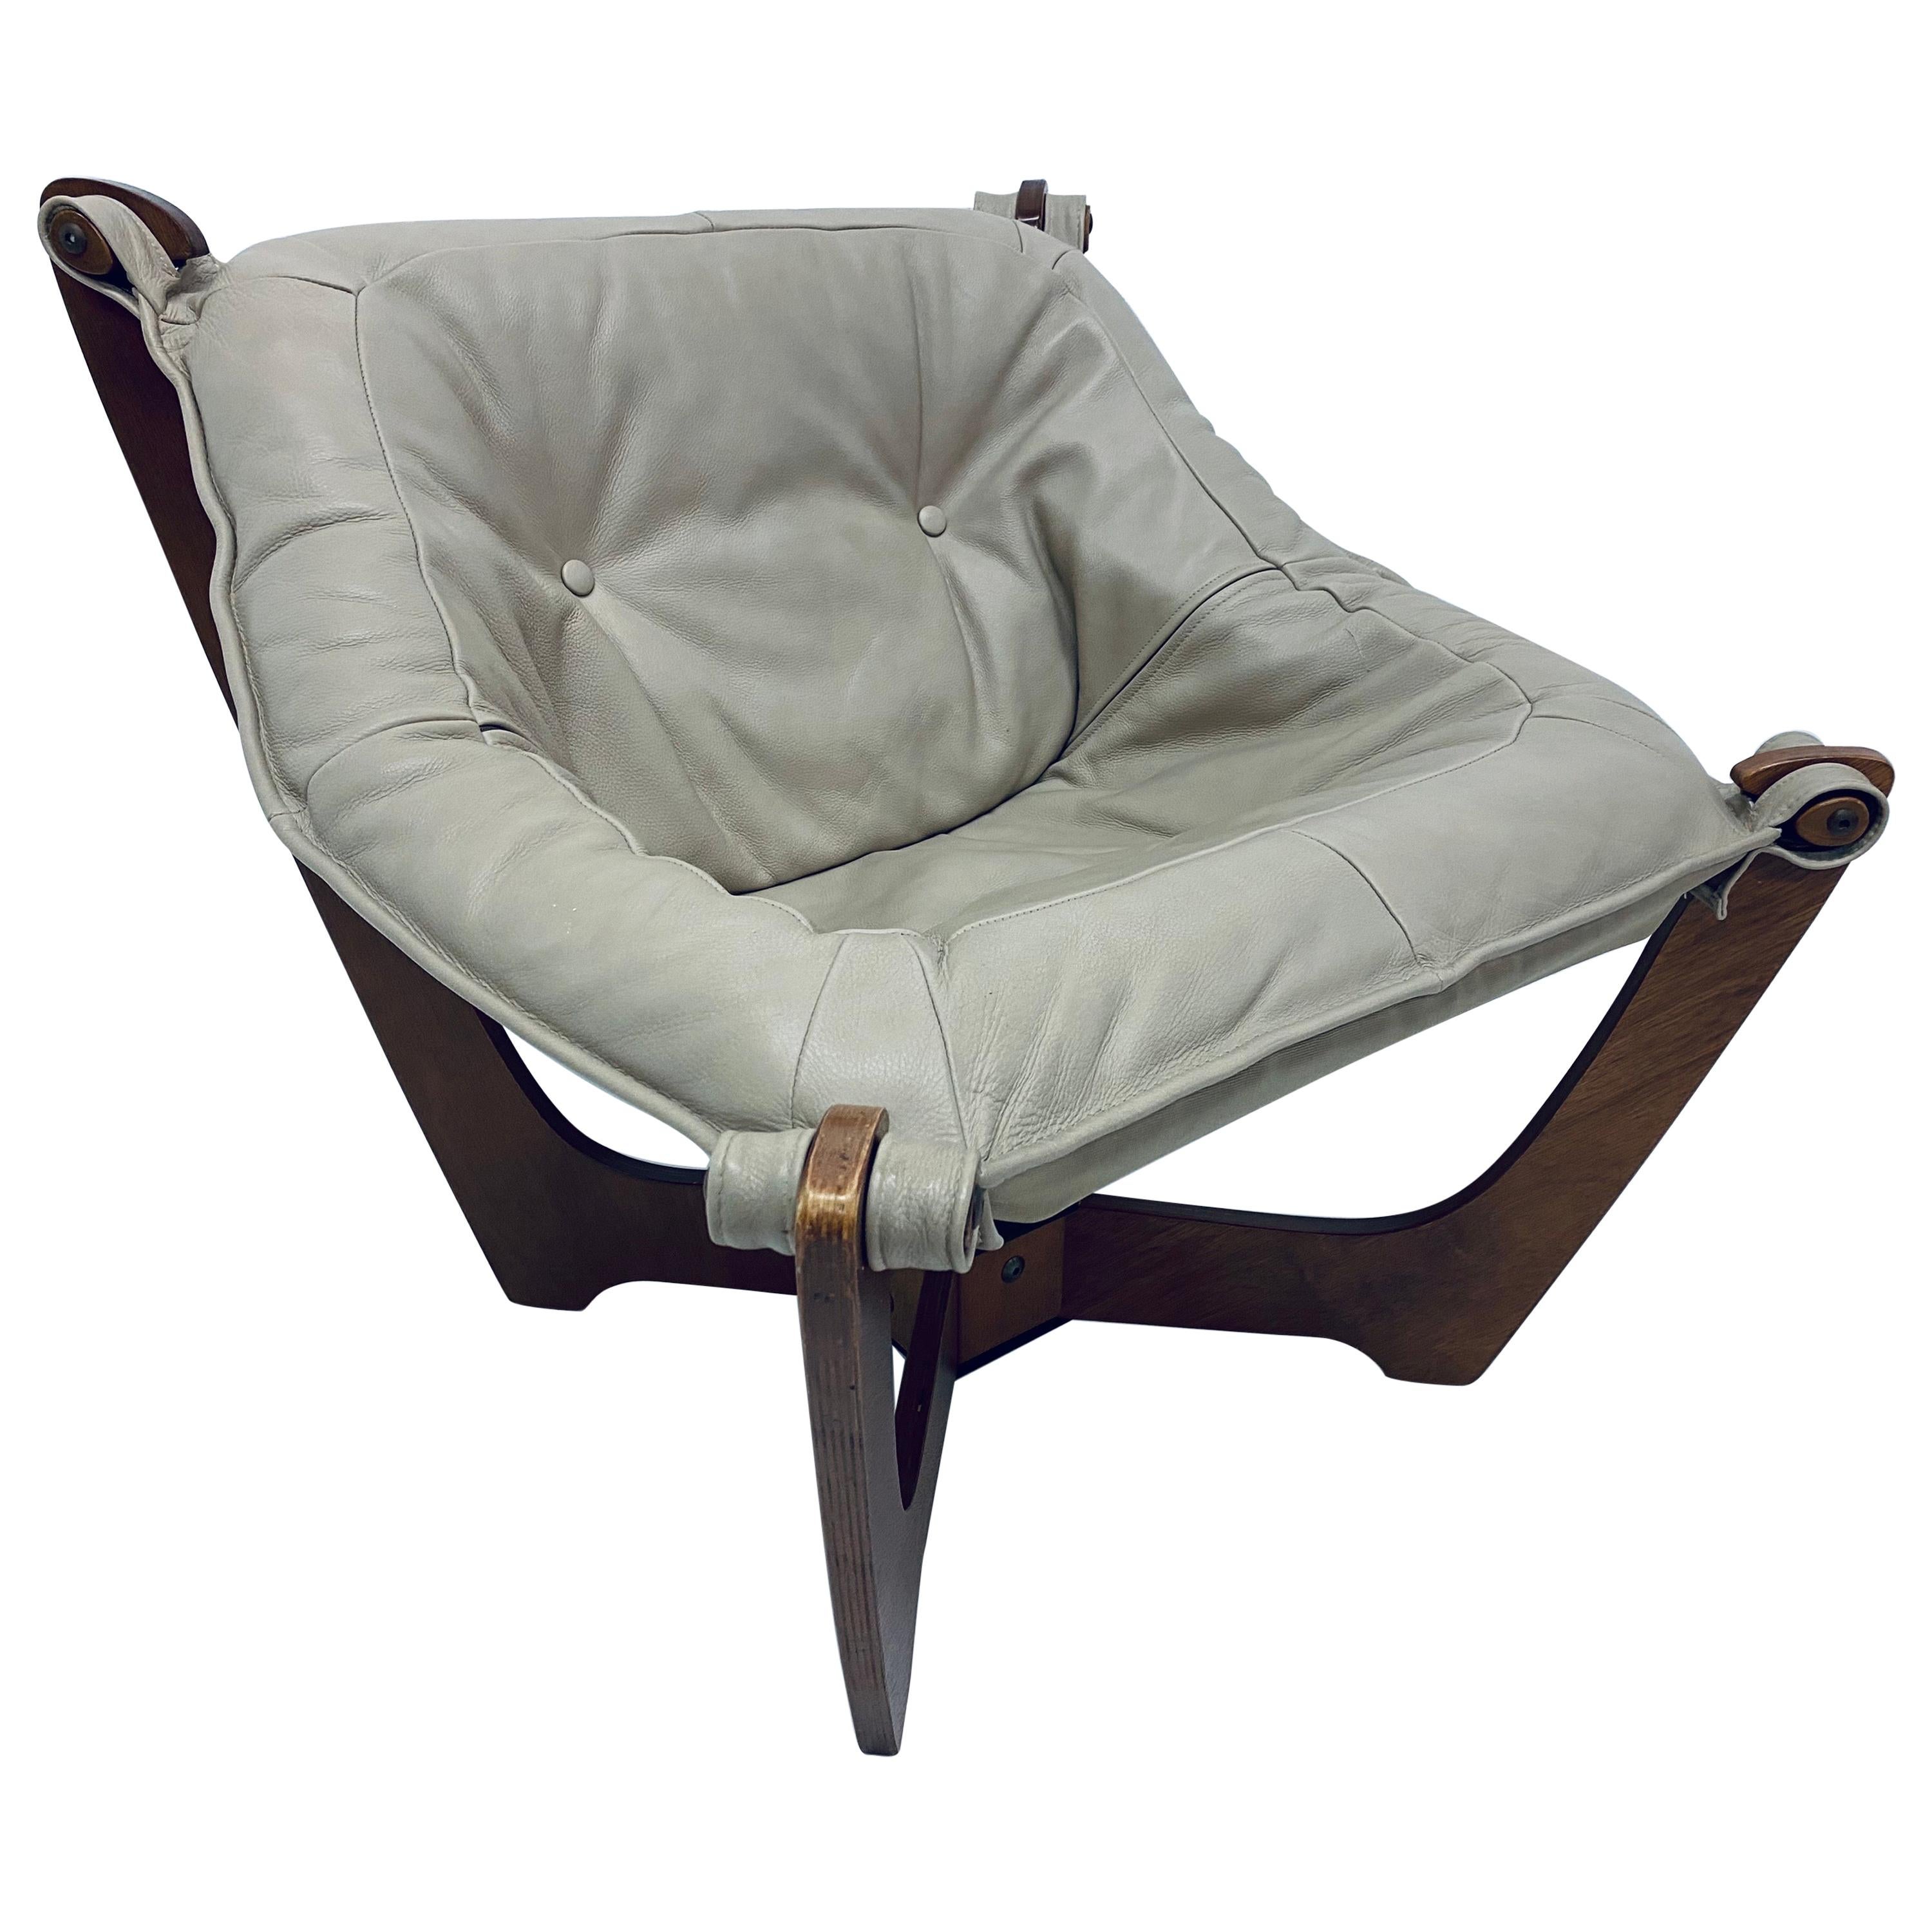 Odd Knutsen "Luna" Tan Leather Sling Lounge Chair for Hjellegjerde